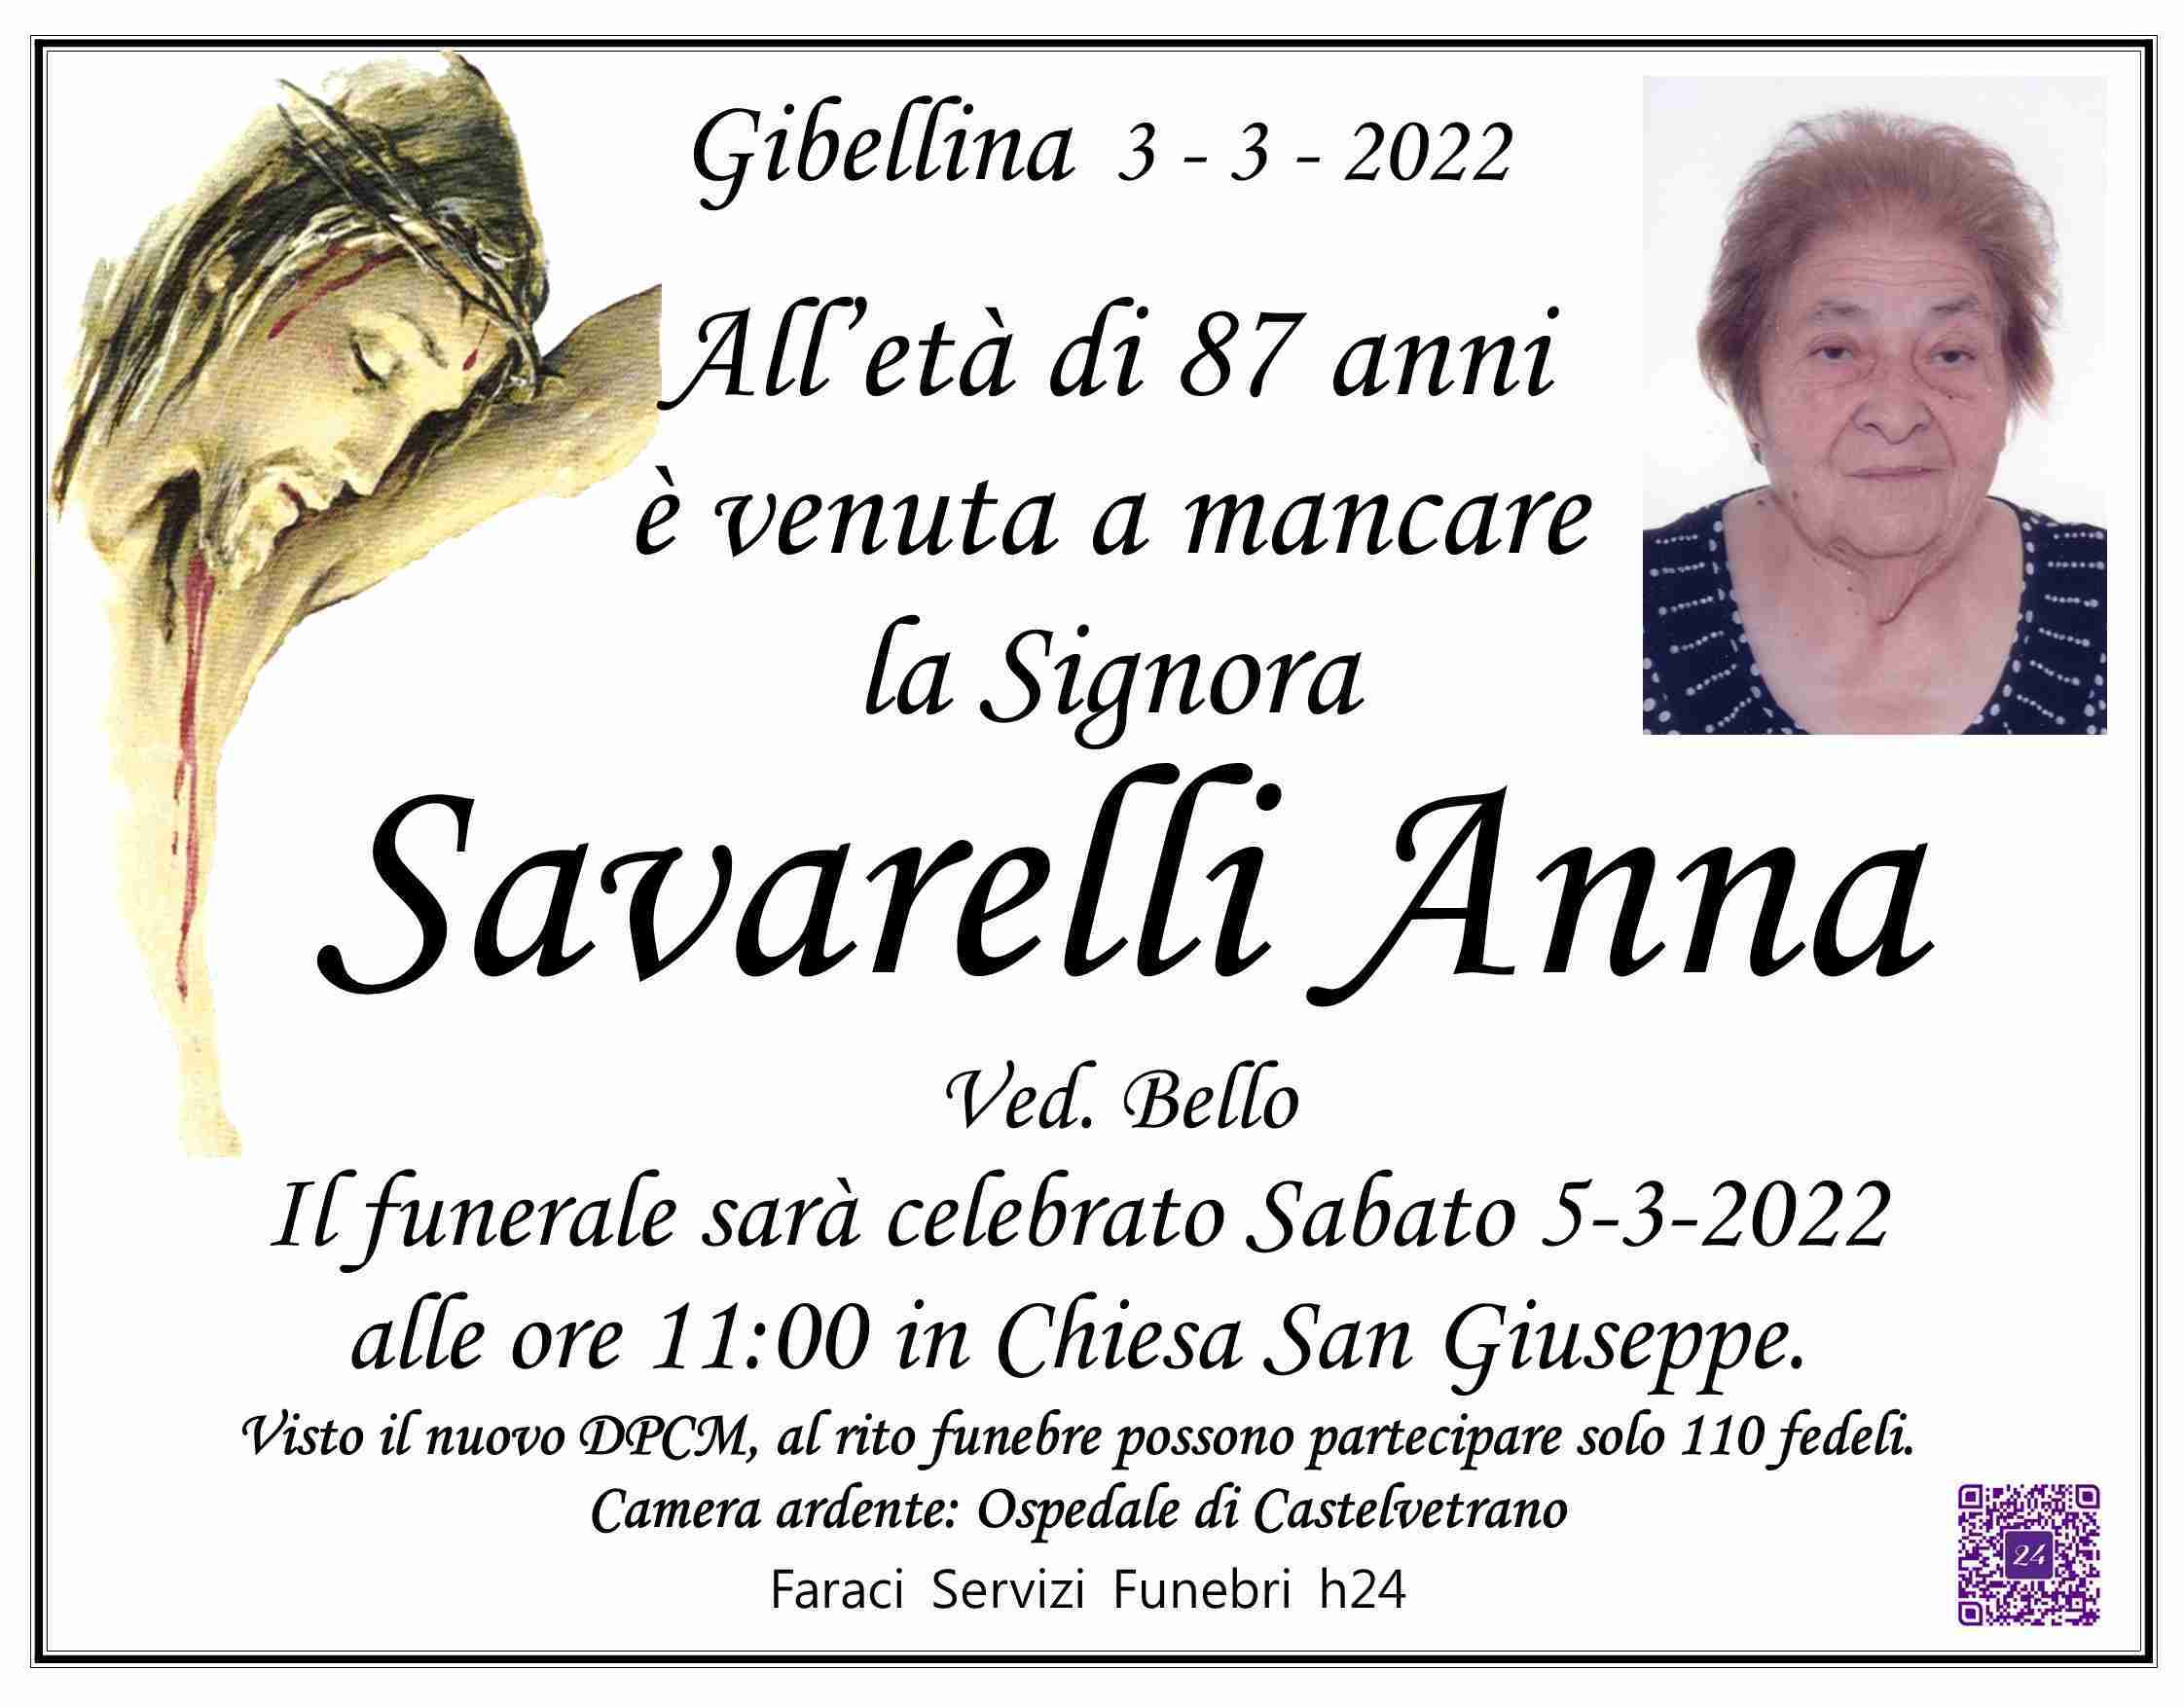 Anna Savarelli